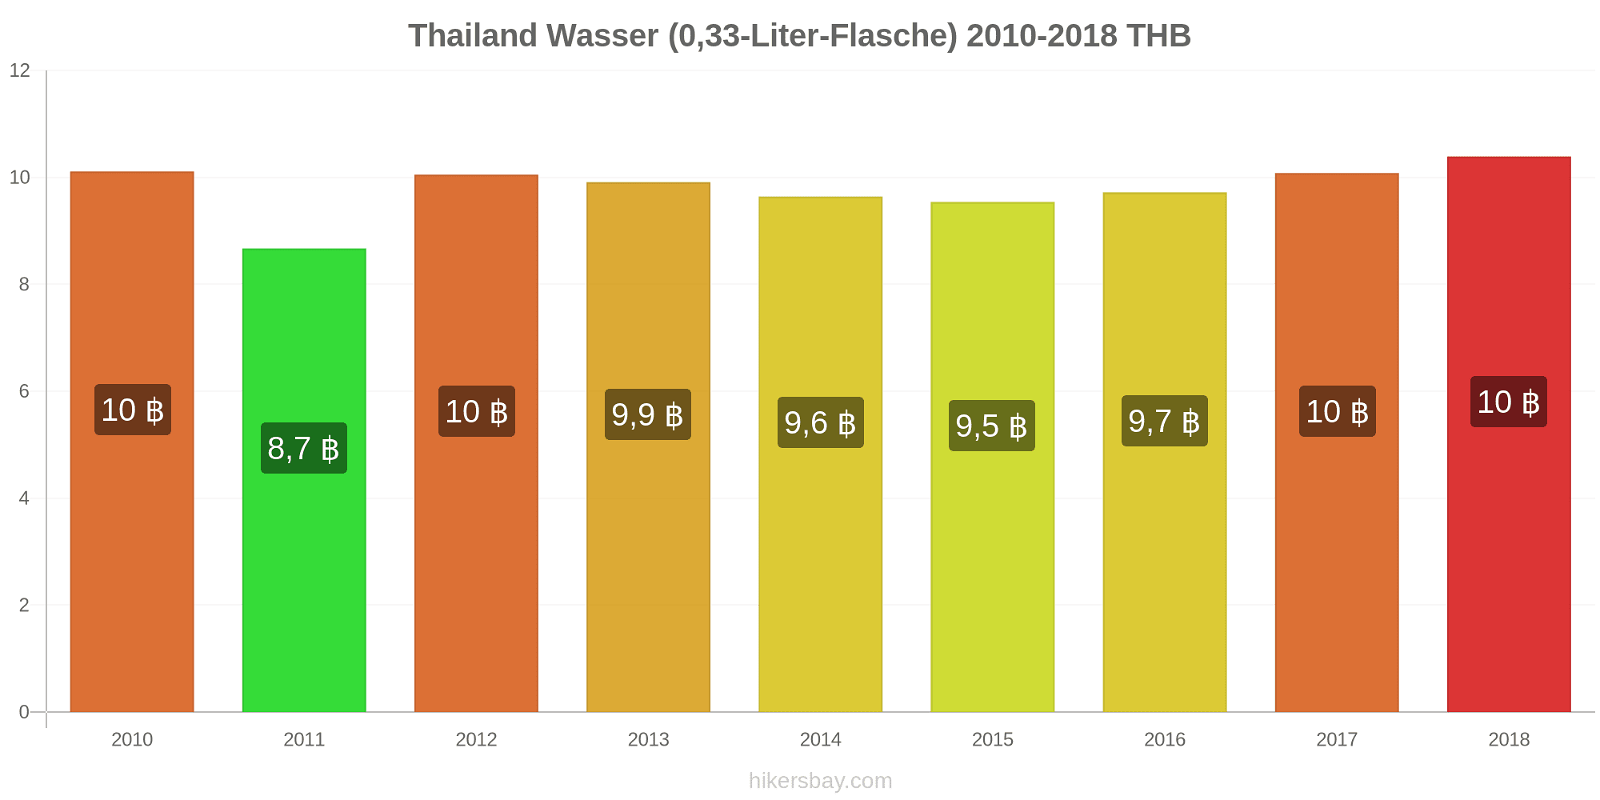 Thailand Preisänderungen Wasser (0,33-Liter-Flasche) hikersbay.com